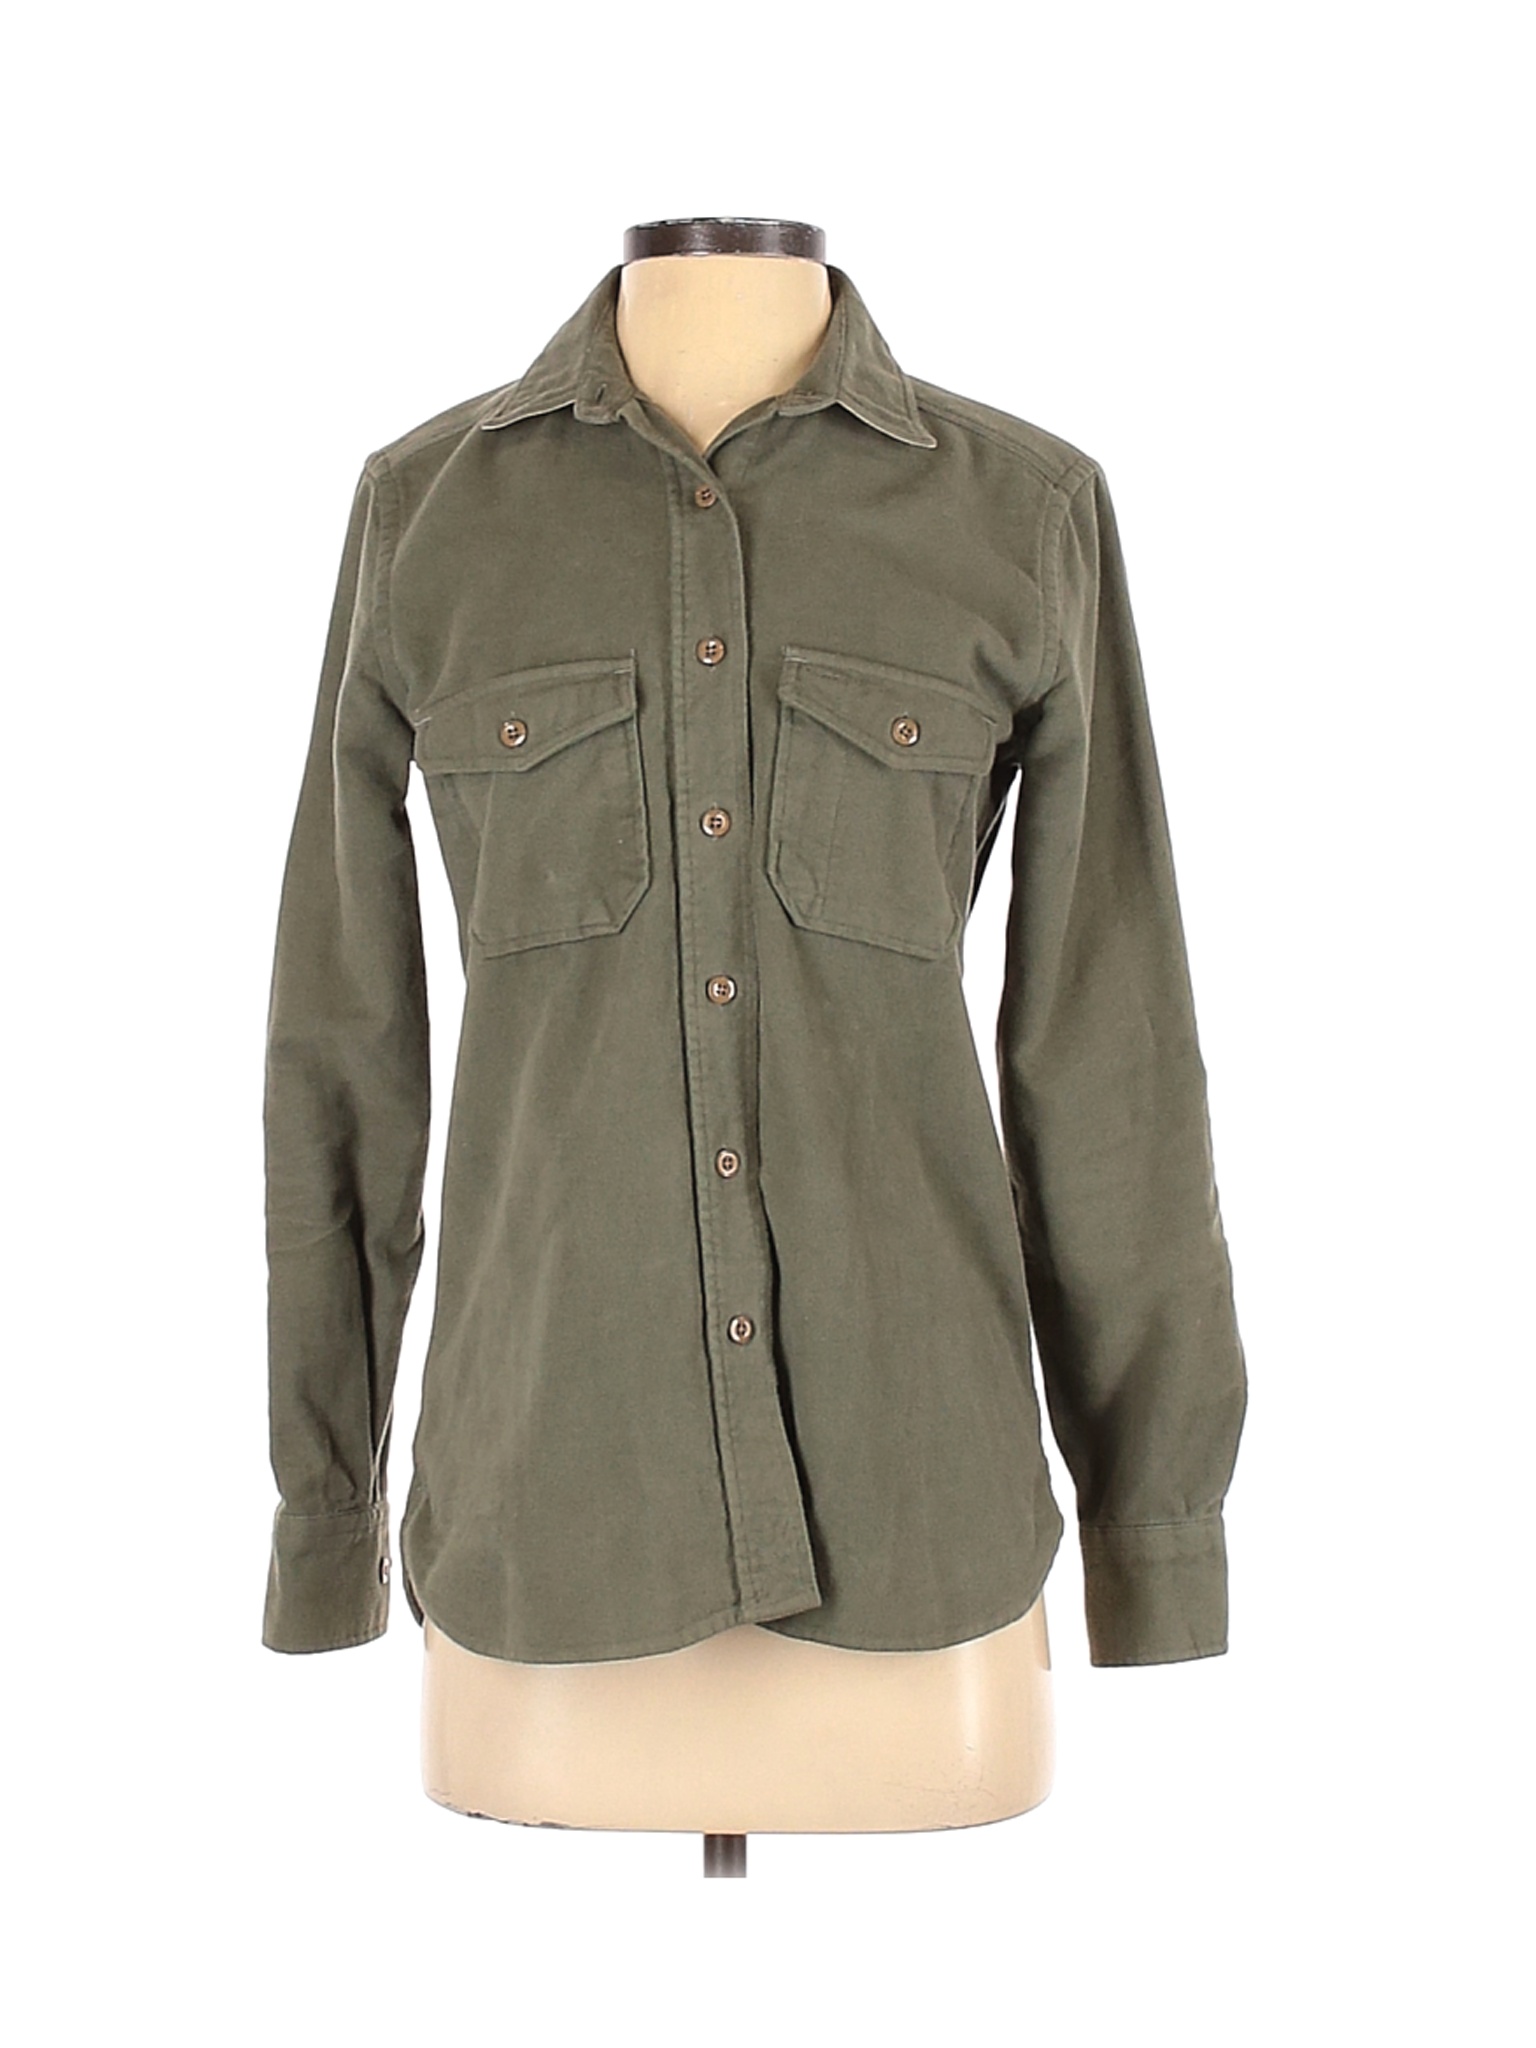 Assorted Brands Women Green Long Sleeve Button-Down Shirt XS | eBay